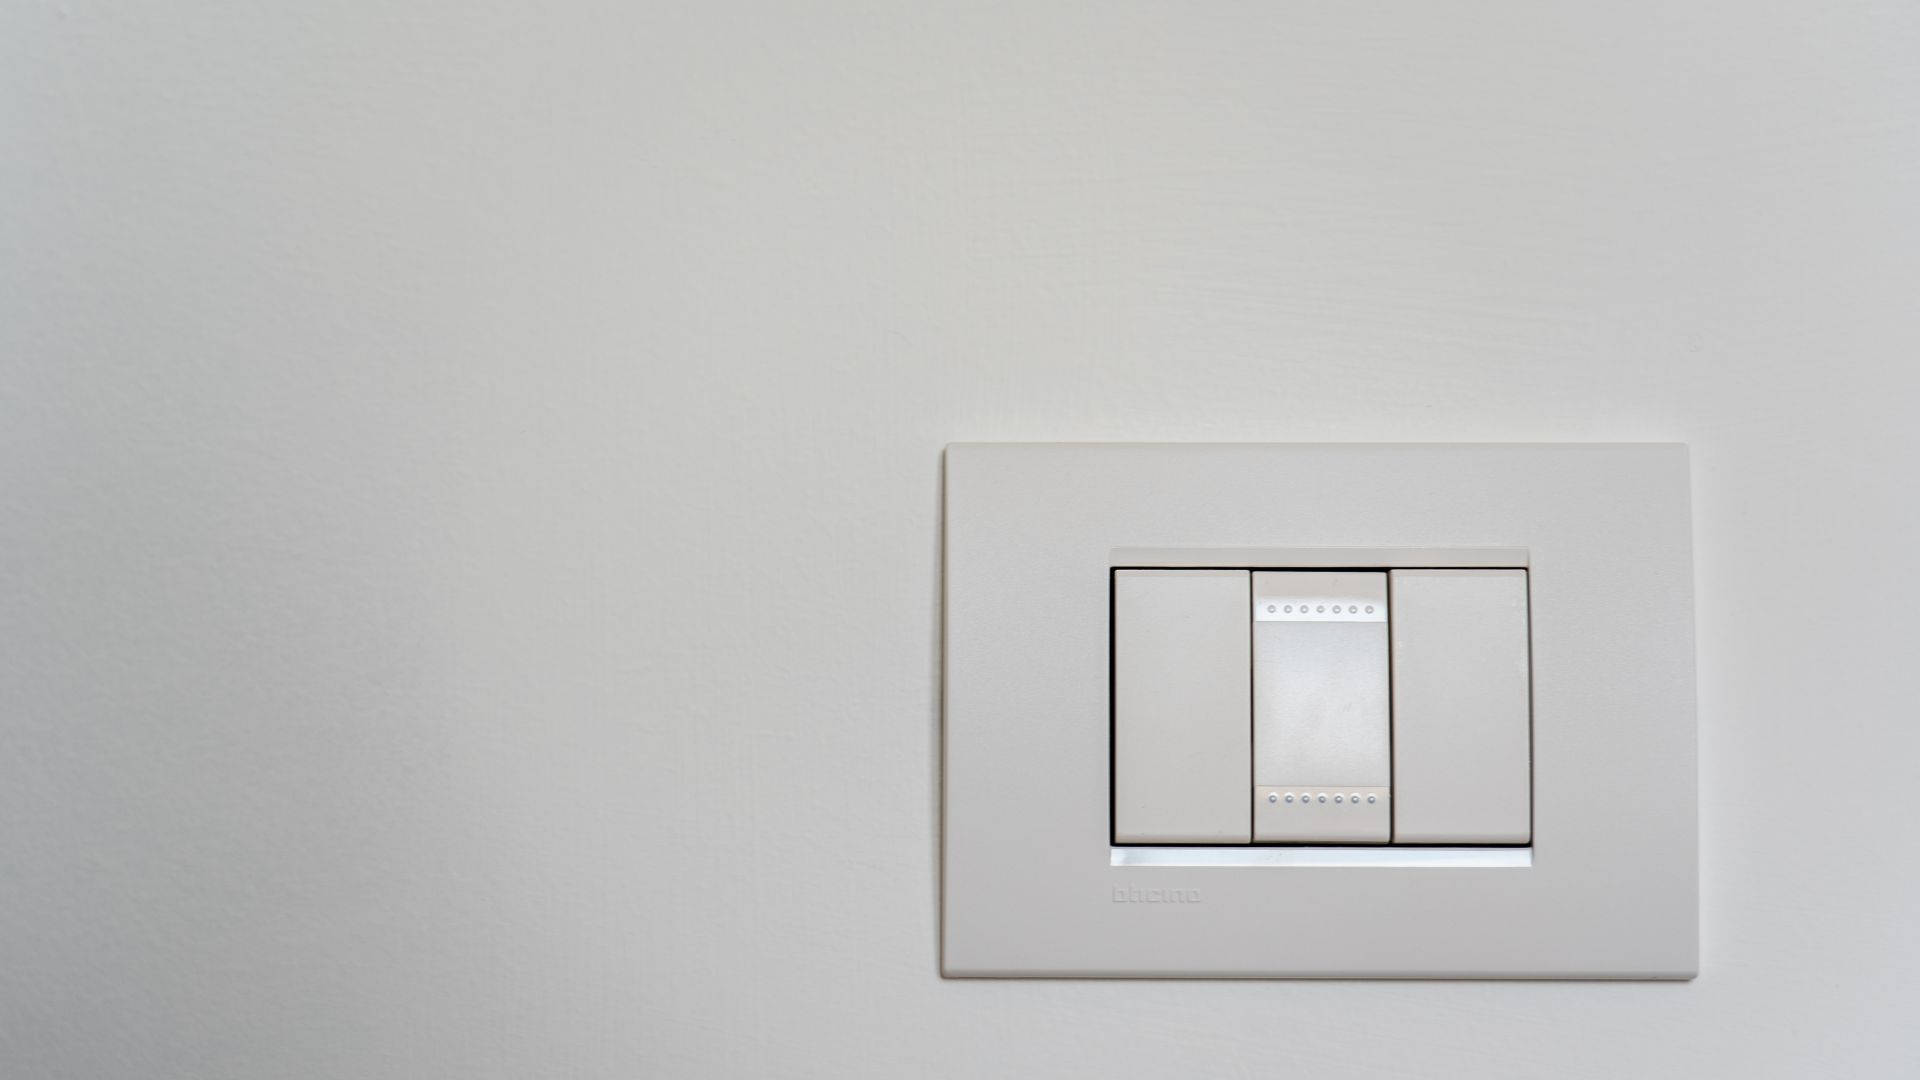 Legrand Smart Light Switch Wallpaper